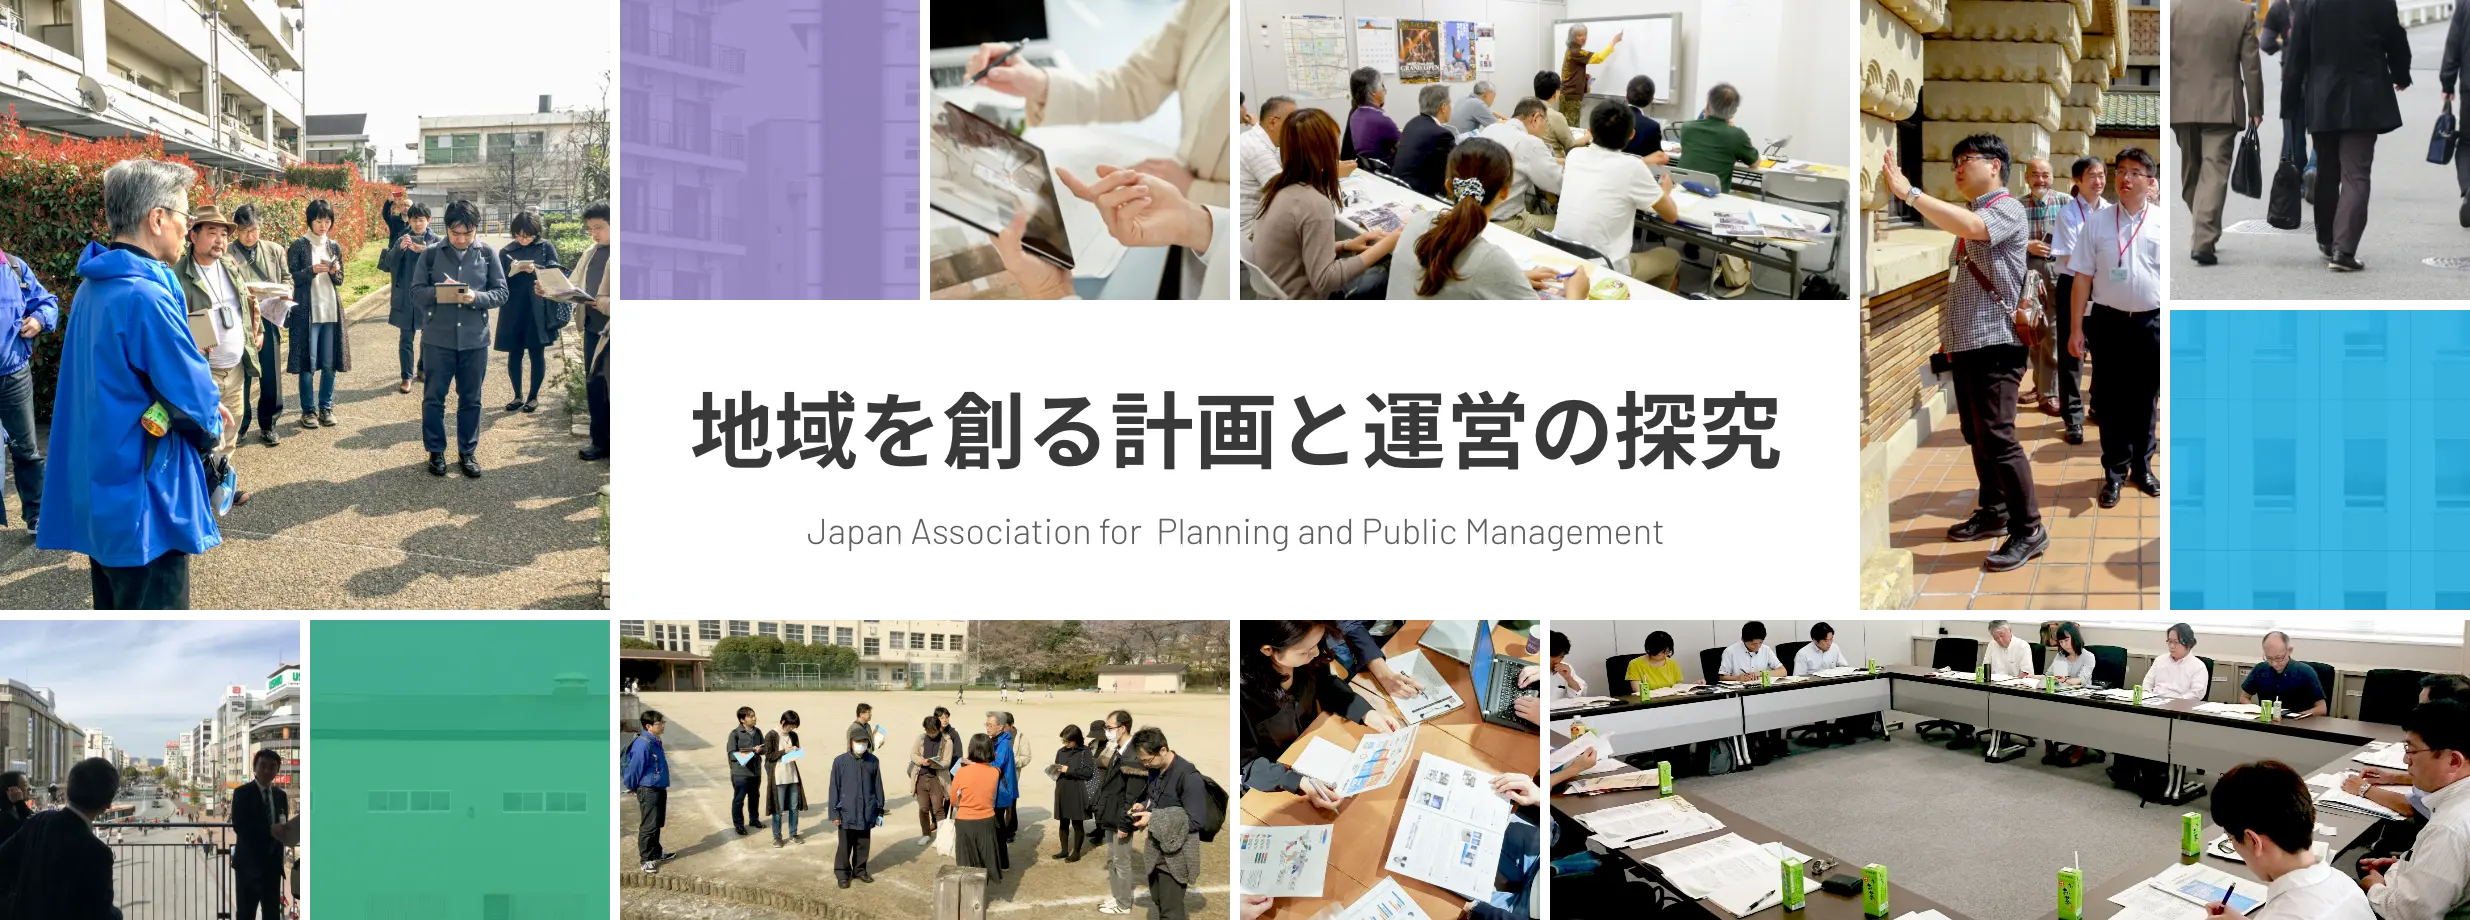 地域を創る計画と運営の探究 Japan Association for Planning and Public Management